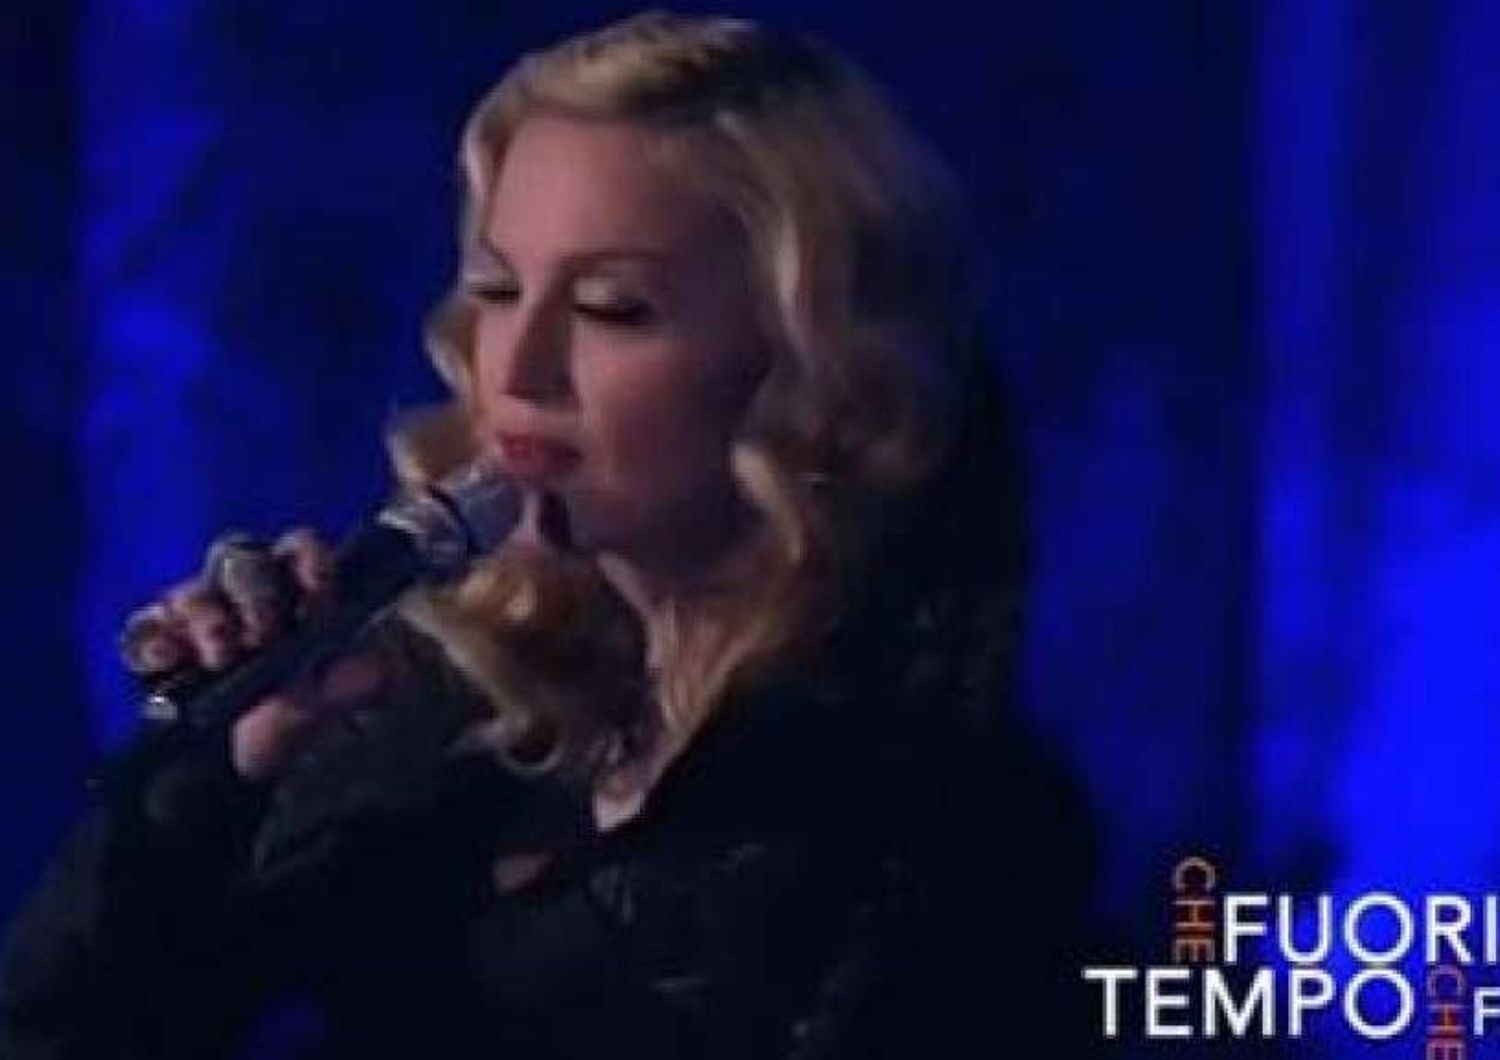 Fuorionda di Madonna da Fazio, "vi piacciono canzoni tristi..." - Video